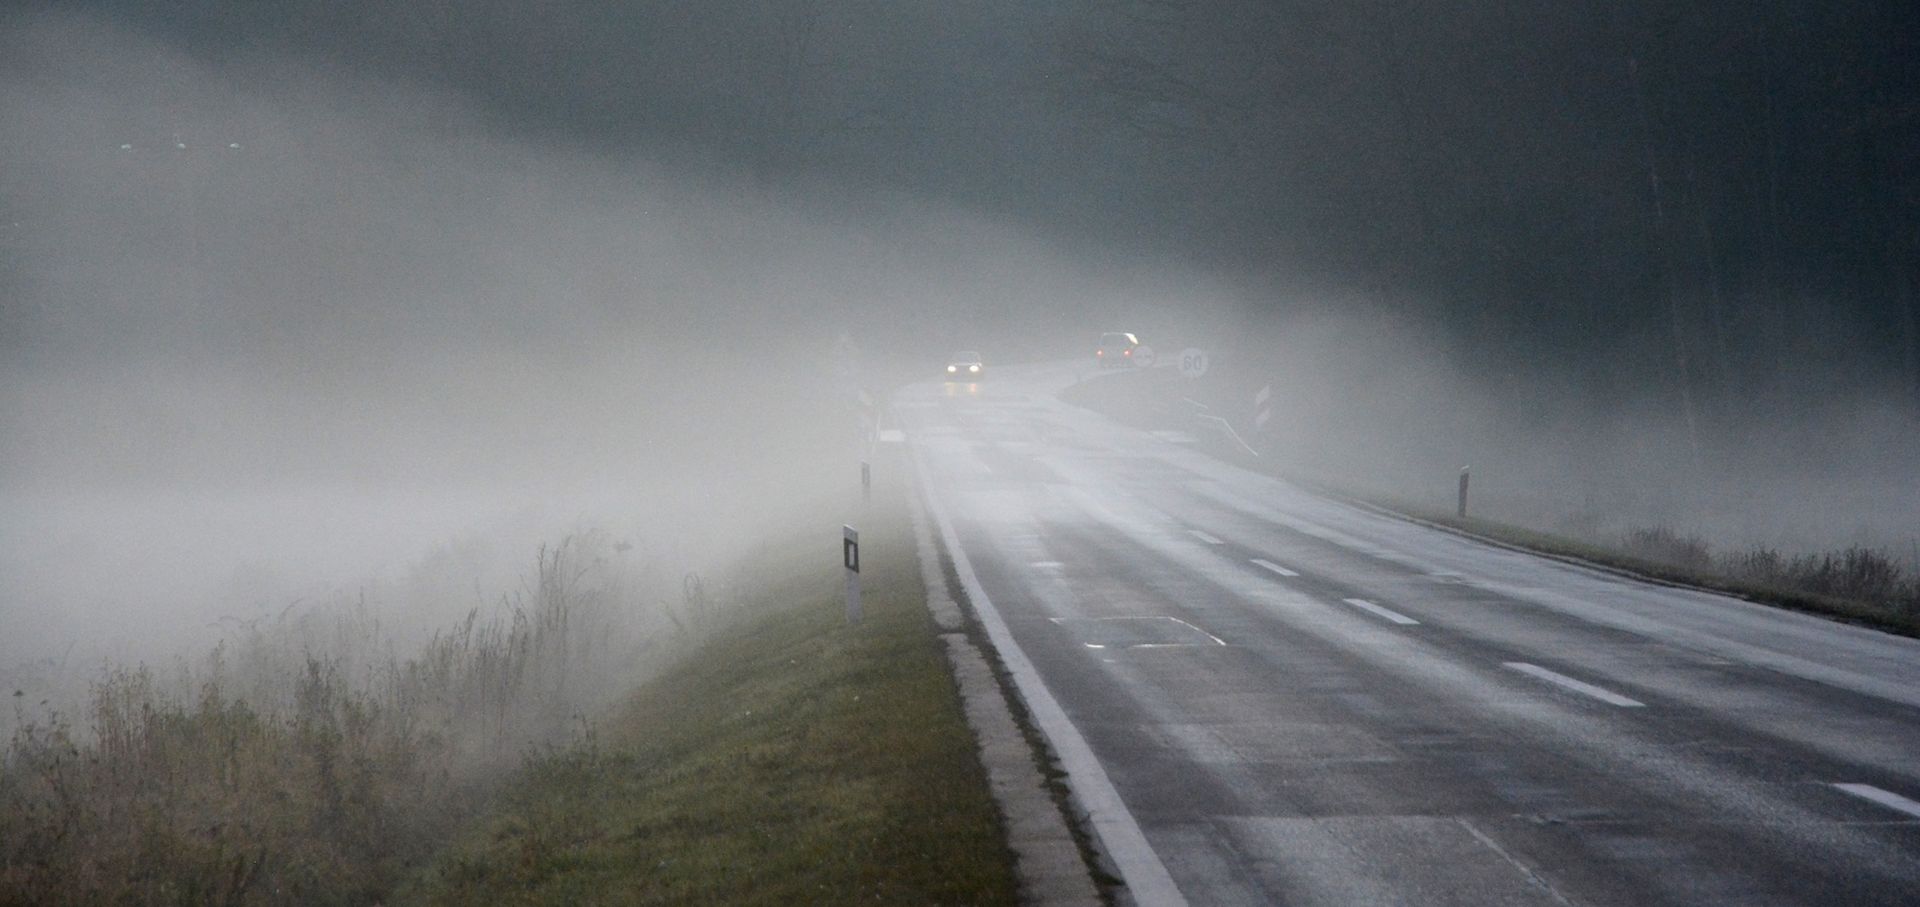 Magla je tijekom jeseni i zime učestala pojava i opasnost za vozače 05.12.2018., Virovitica - Magla je u jesenskom i zimskom razdoblju ucestala pojava, a posebno je opasna za vozace u prometu. Photo: Damir Spehar/PIXSELL